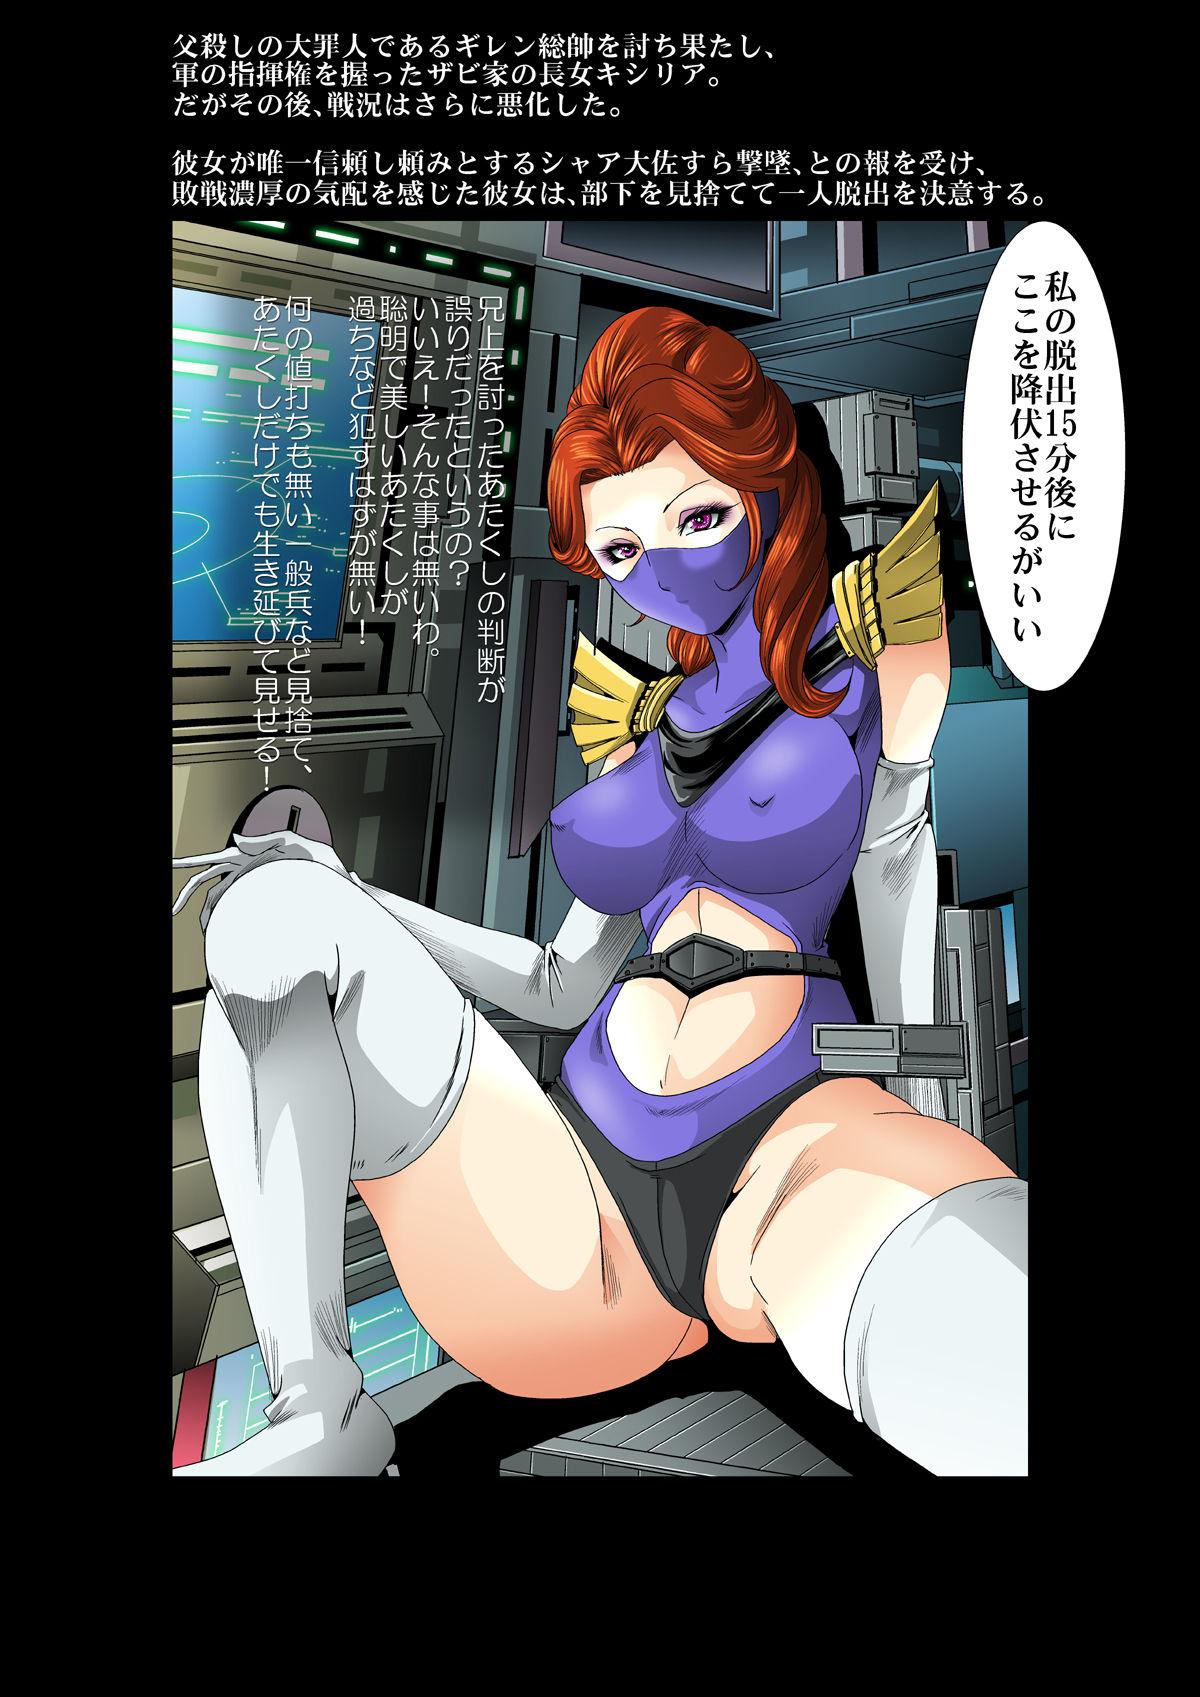 Sloppy Kycilia-sama Reboot Keikaku - Mobile suit gundam Flagra - Page 6